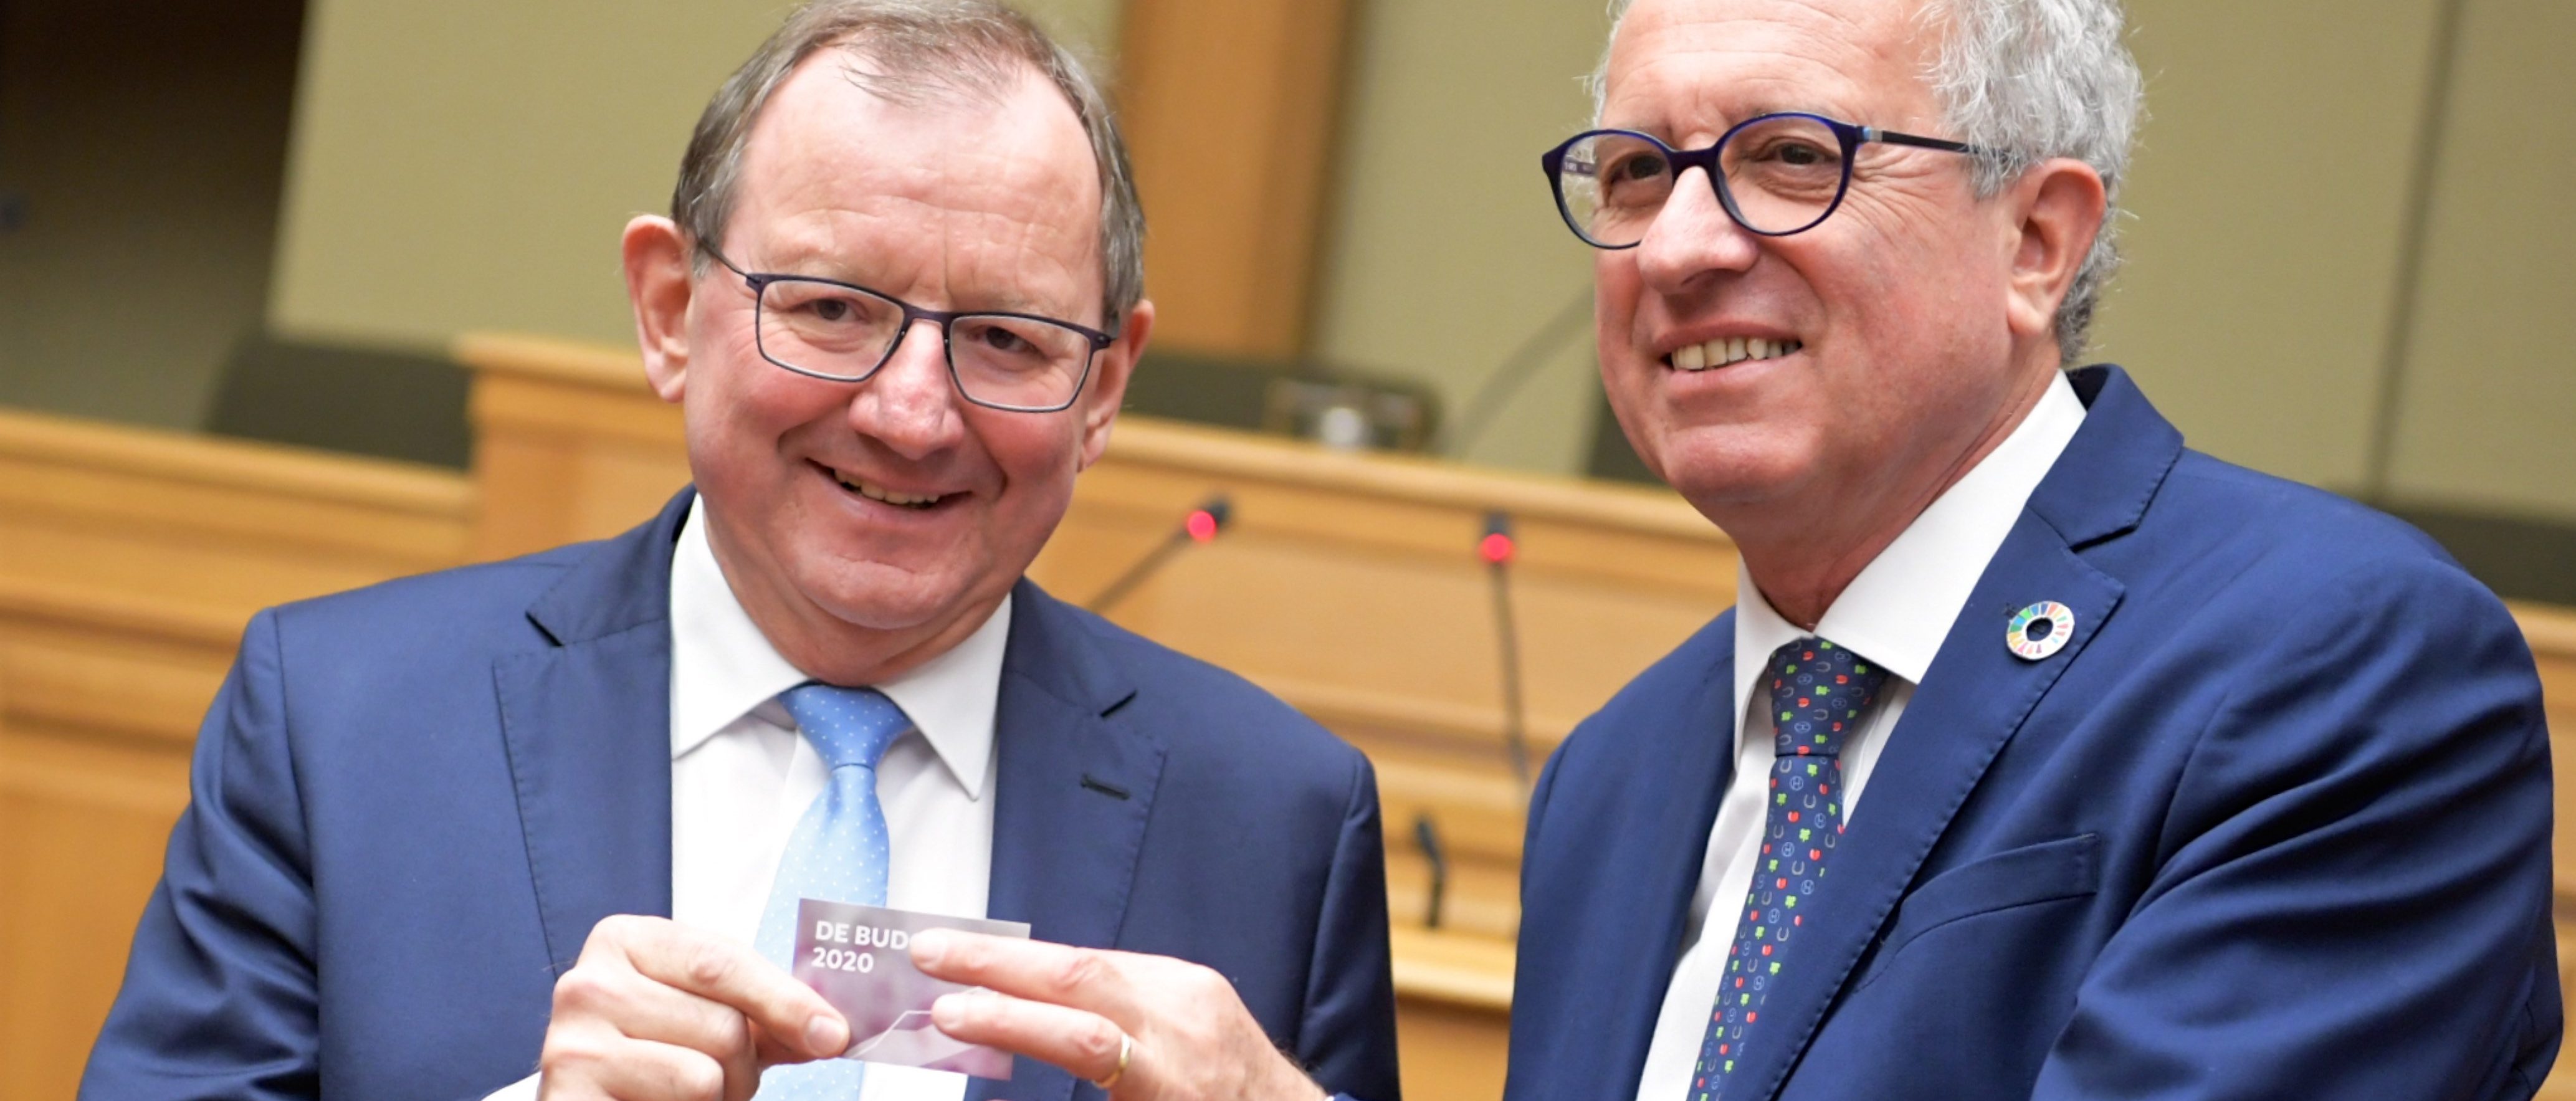 Luxemburger Haushaltsentwurf für 2020 übersteigt erstmals 20 Milliarden Euro